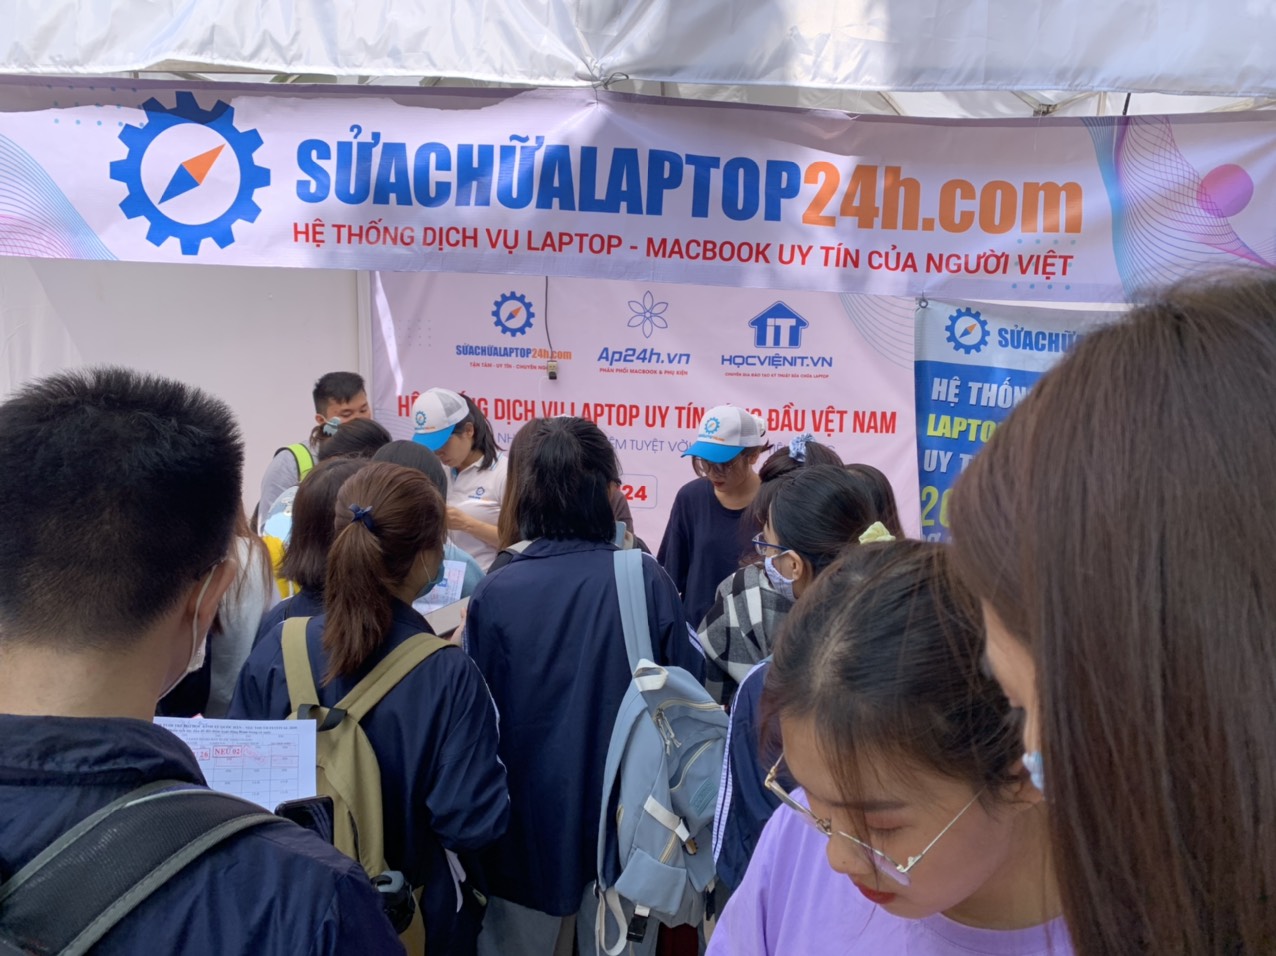 SUACHUALAPTOP24h.com đồng hành cùng sự kiện chào tân sinh viên trường Đại học Kinh tế quốc dân NEU Youth Festival 2020